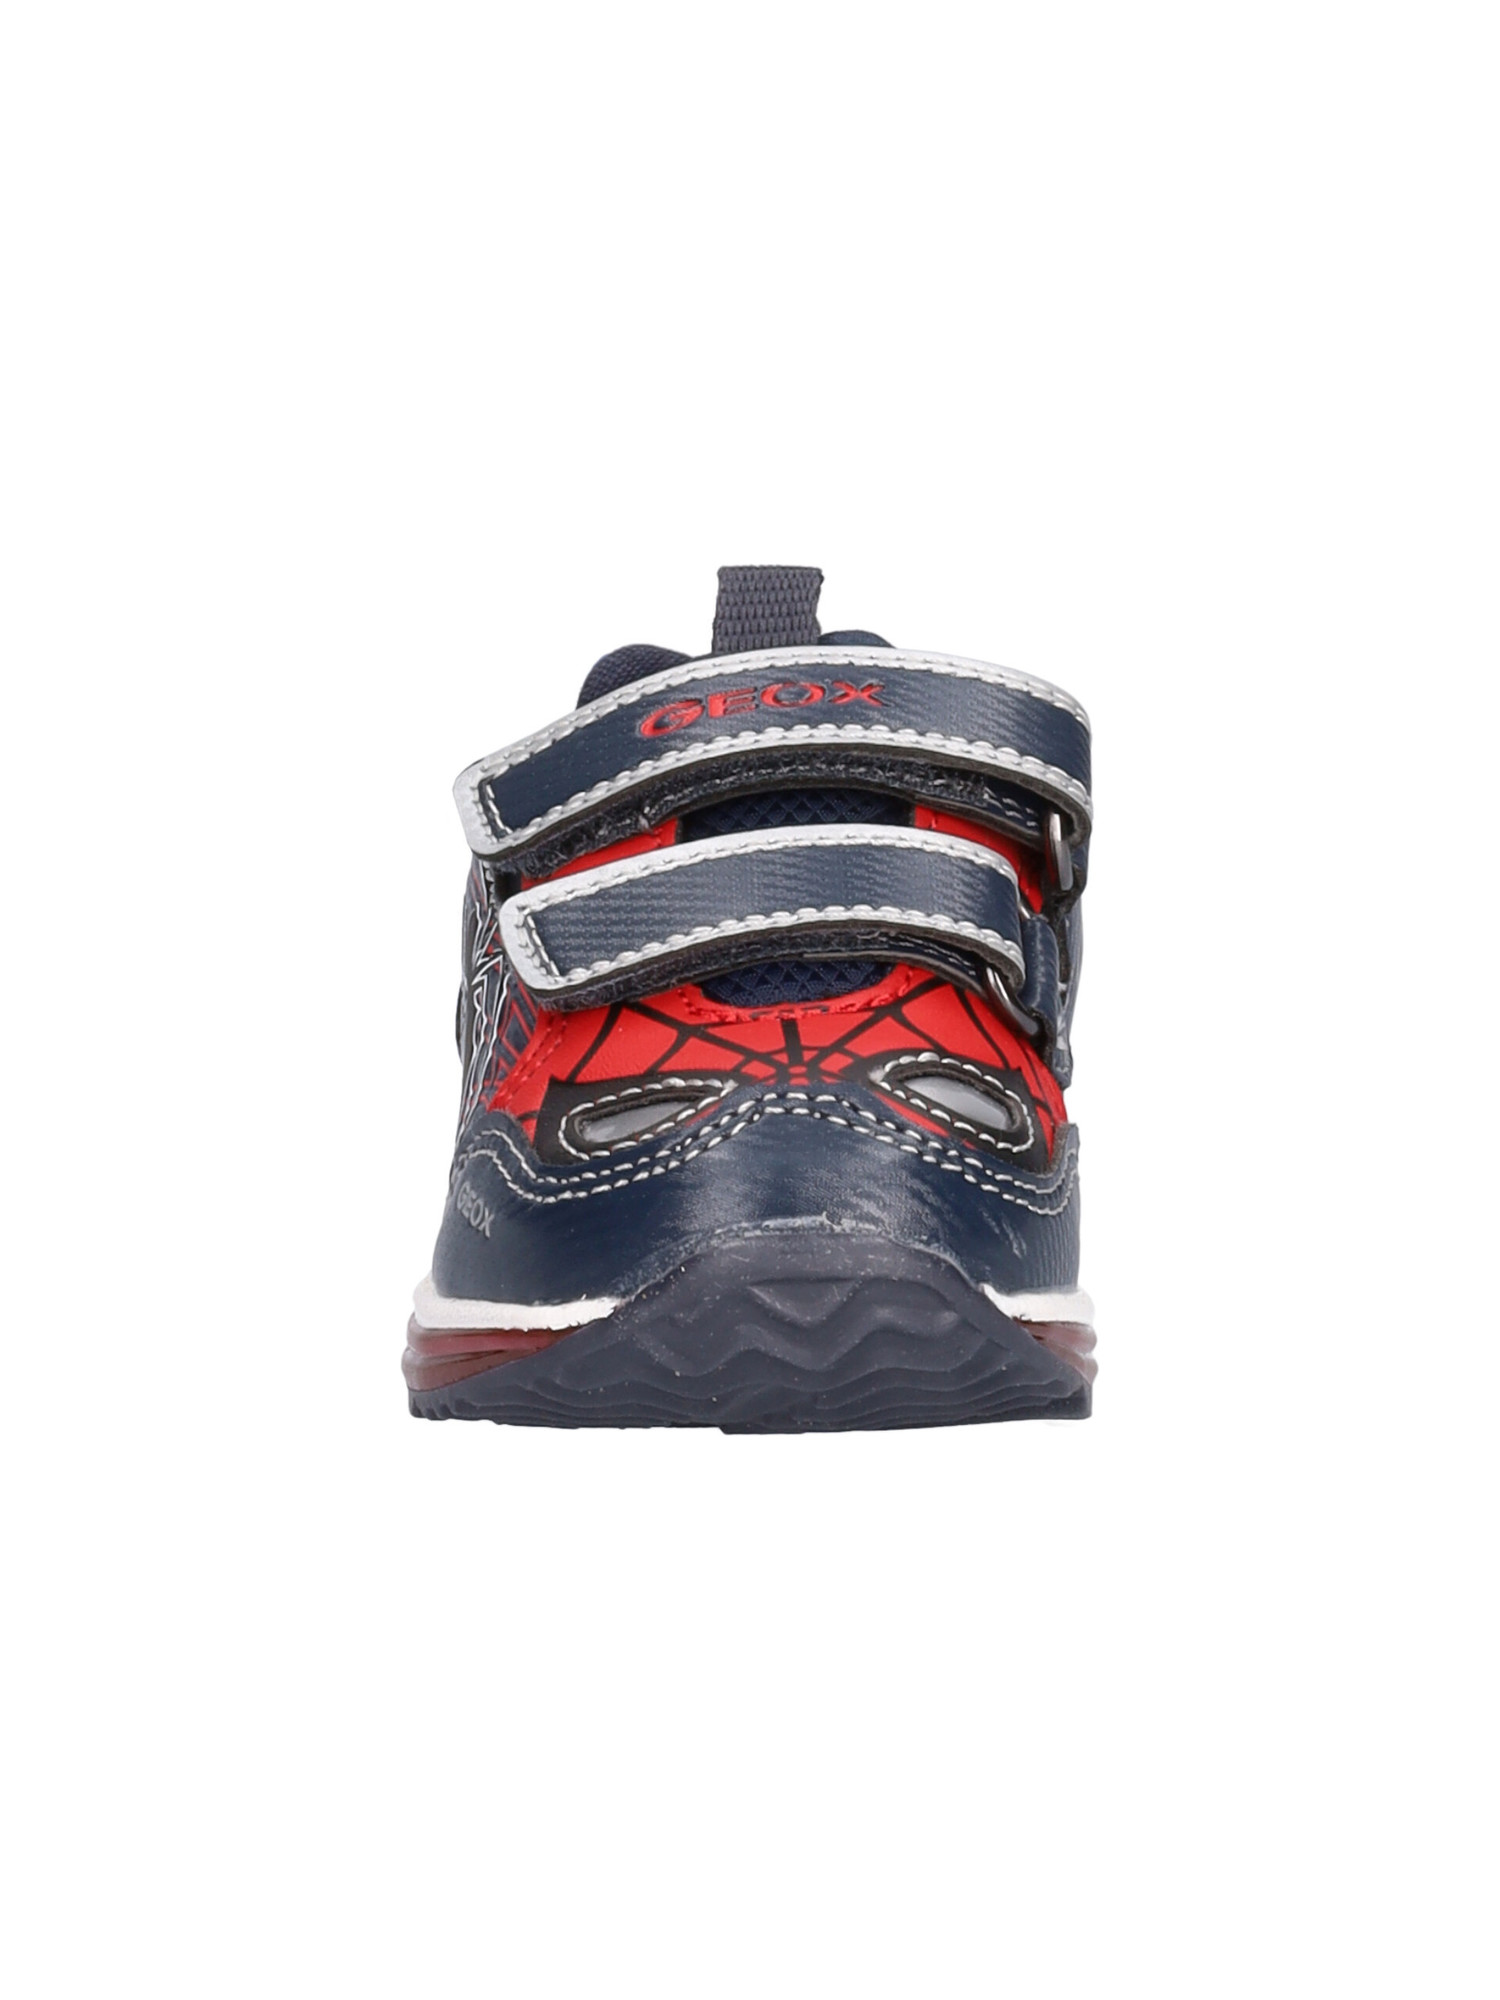 sneaker-spiderman-by-geox-primi-passi-bambino-multicolor-565f88